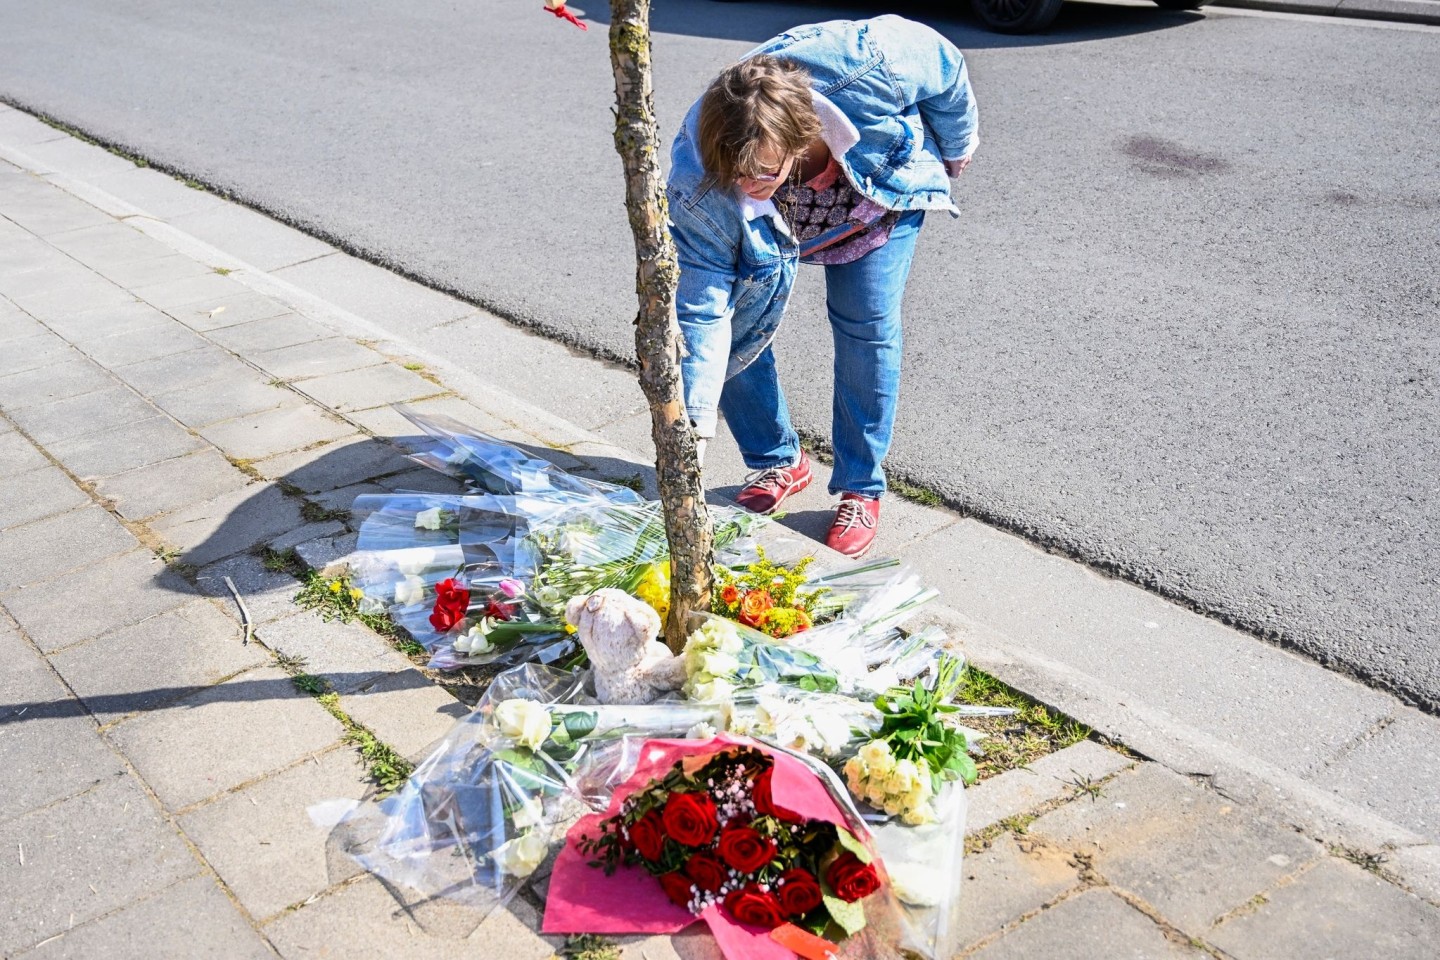 Eine Frau legt Blumen an der Unfallstelle nieder.